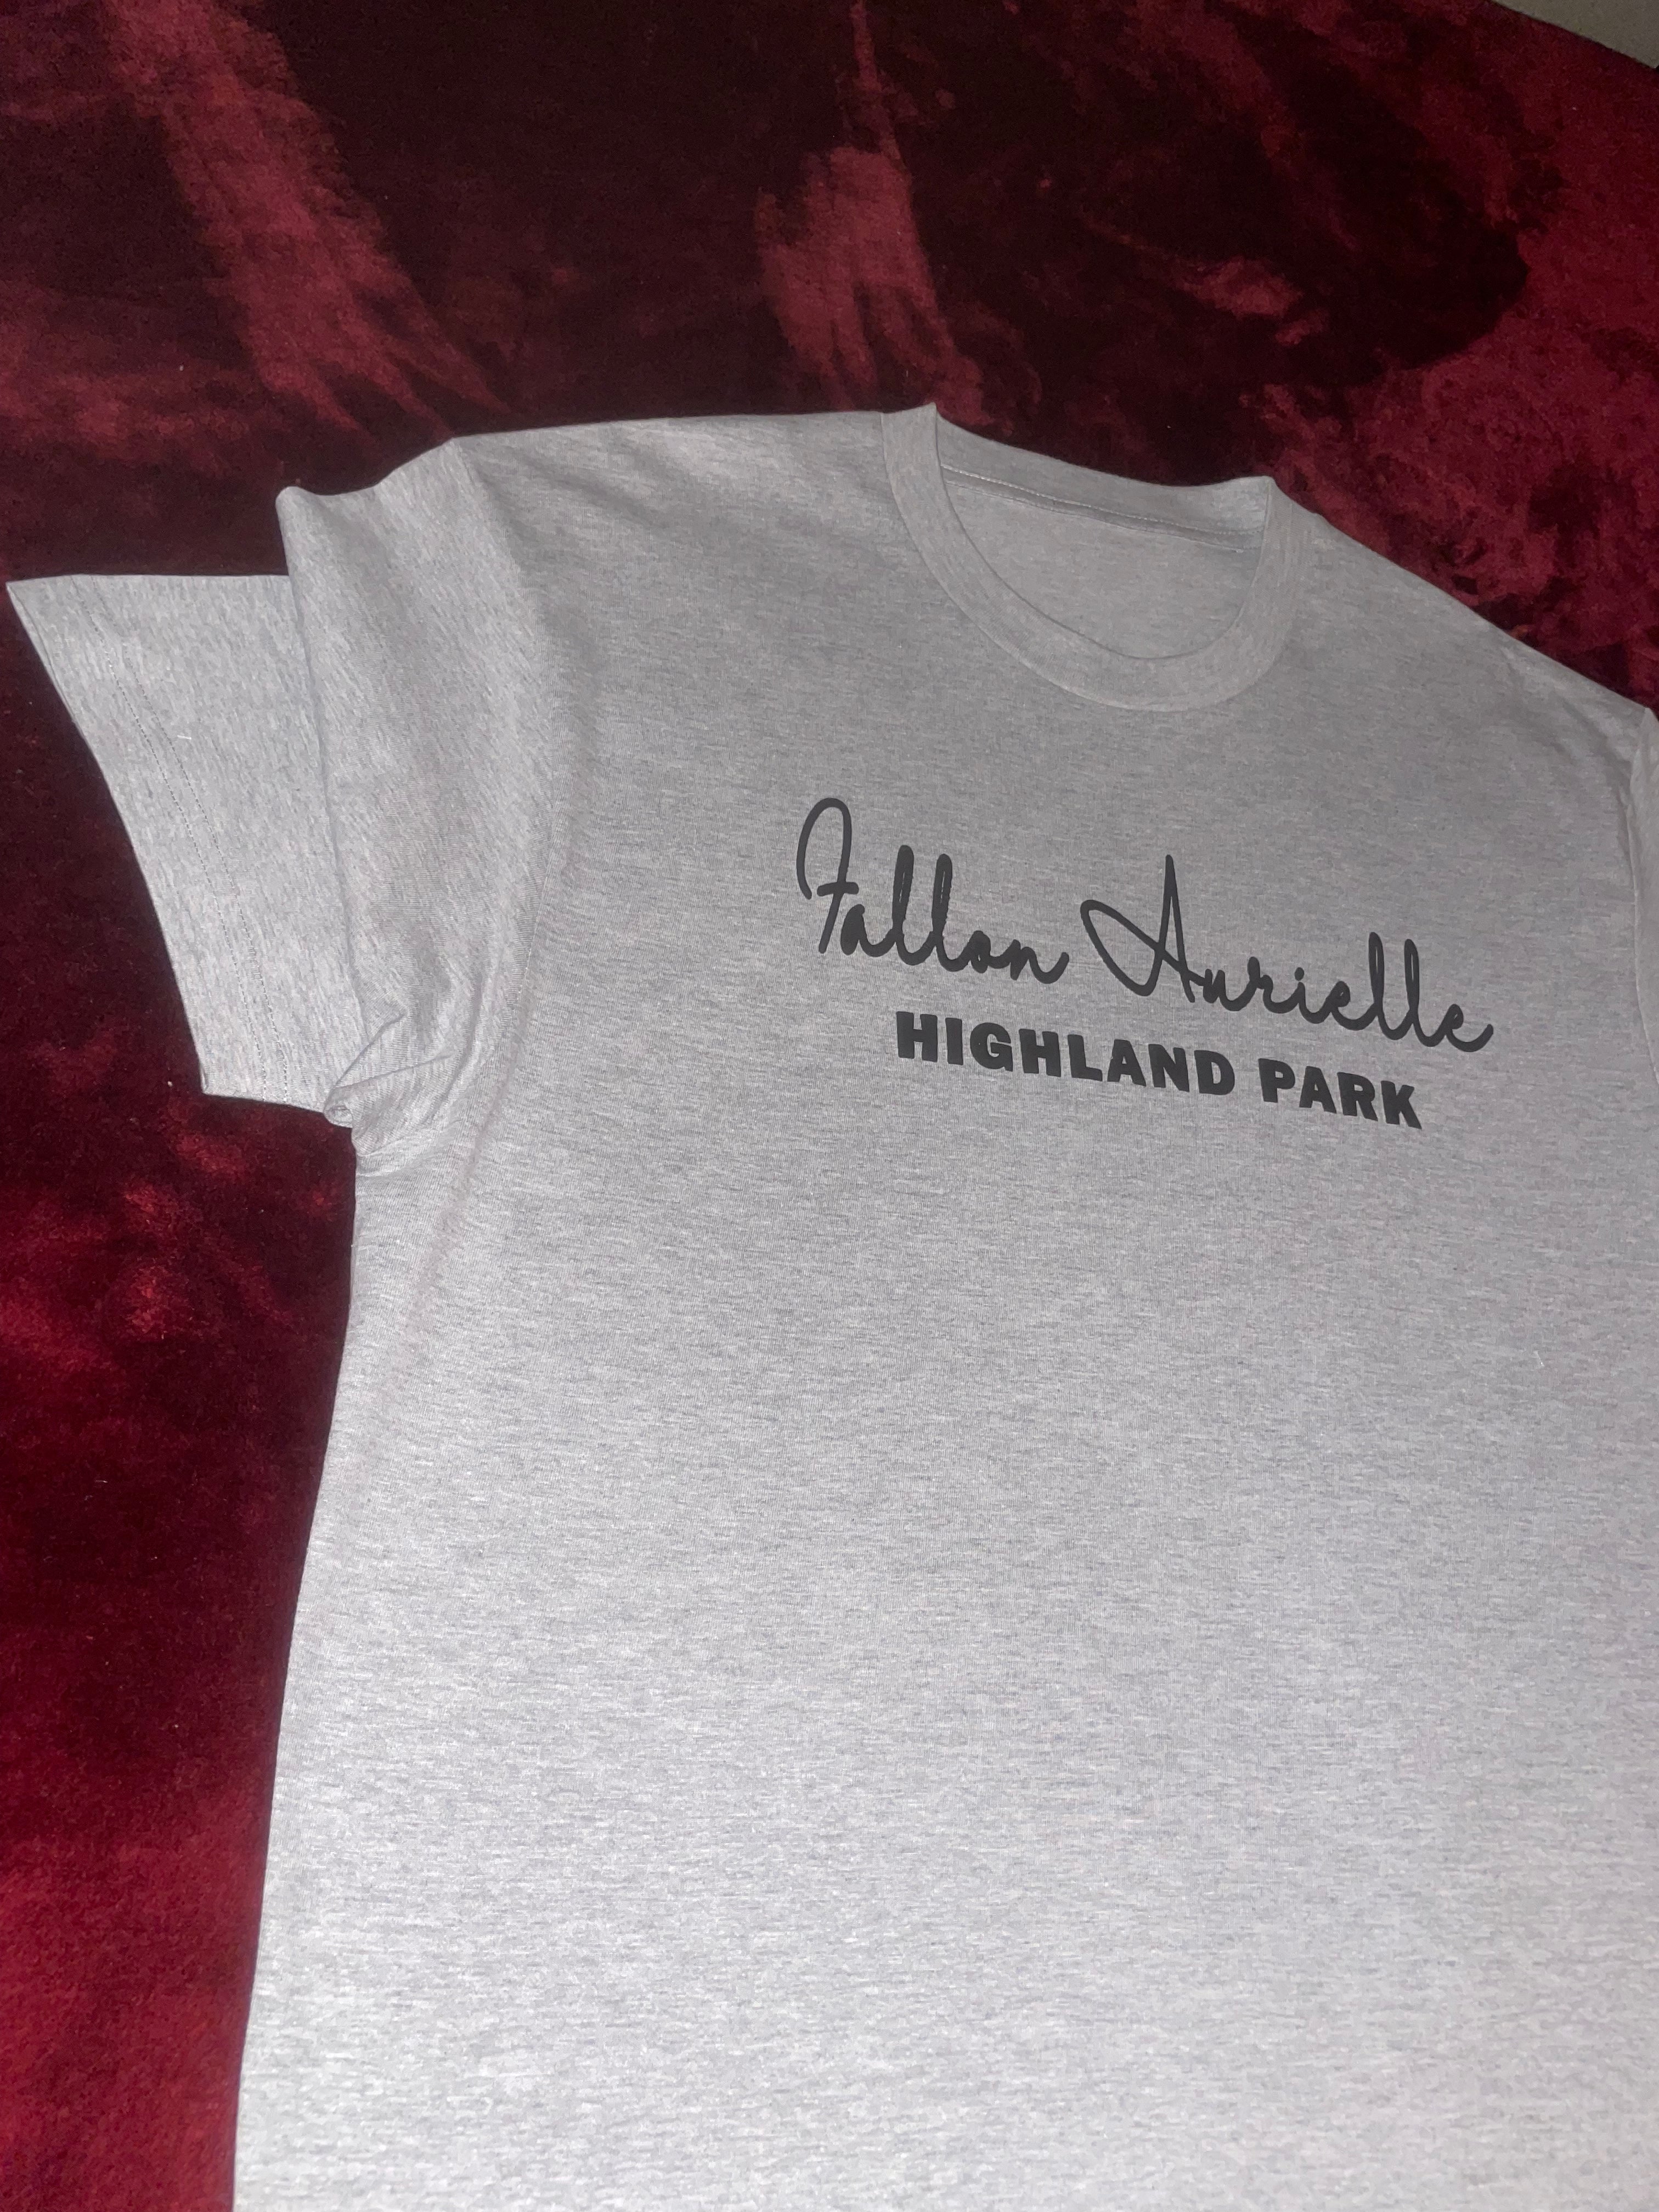 Fallon Aurielle Unisex Signature Highland Park Short Set (Gray & Black)